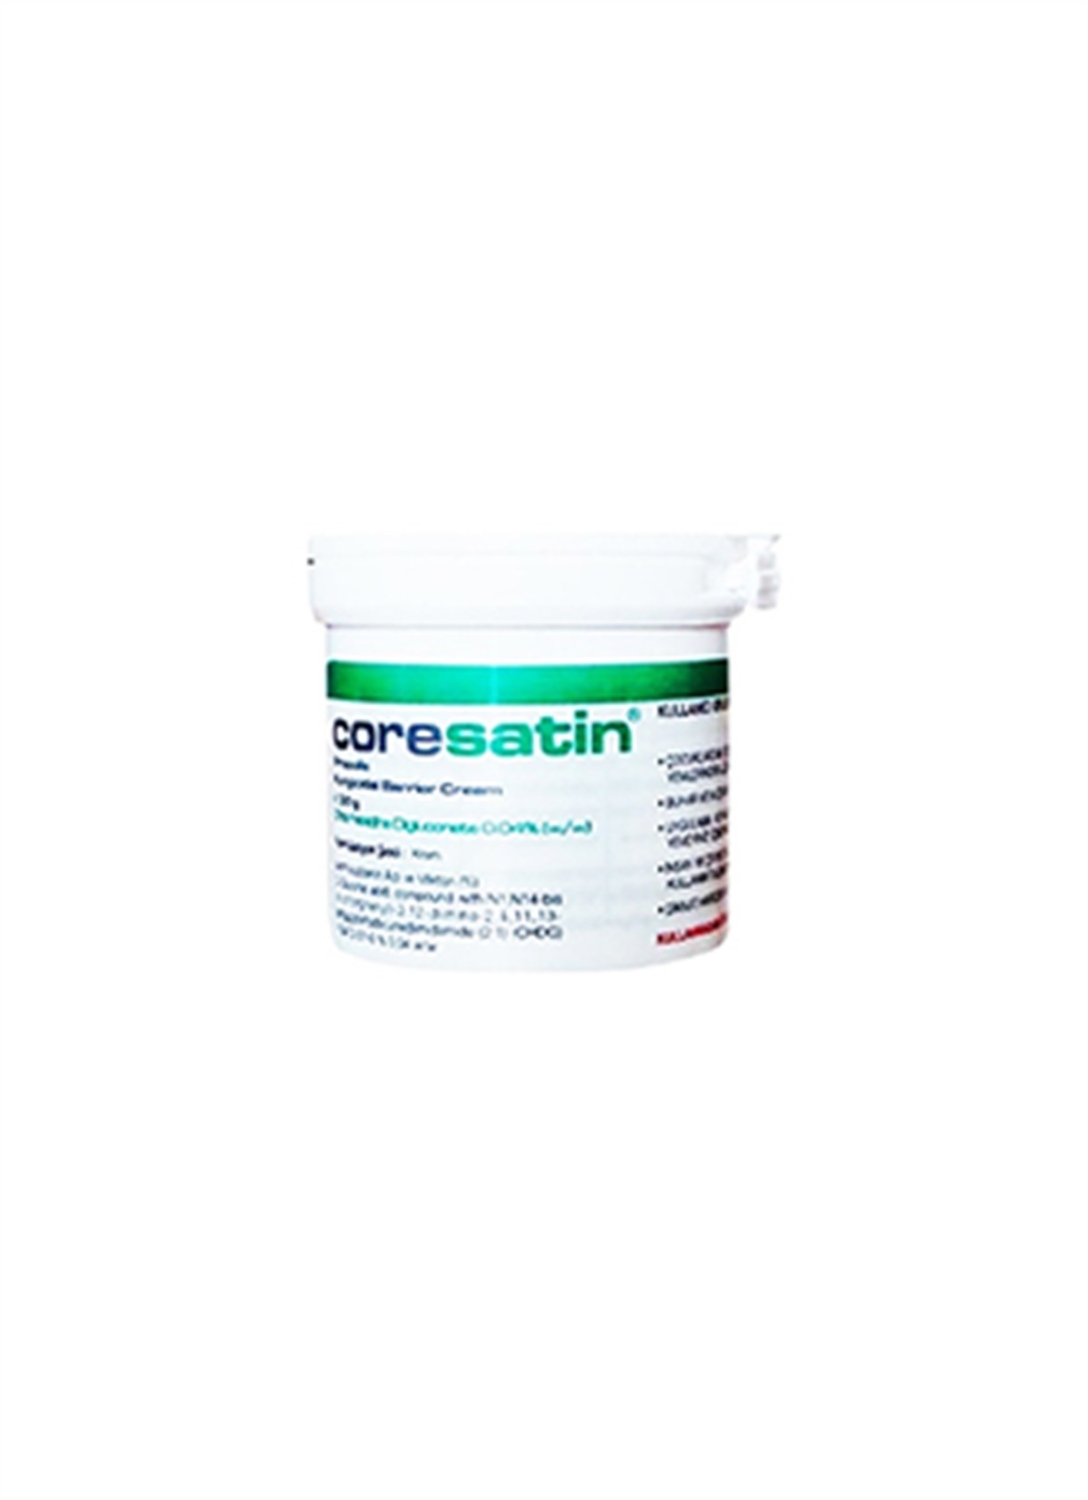 Coresatin Propolis Barrier Cream Yeşil 30g Kavanoz - 1